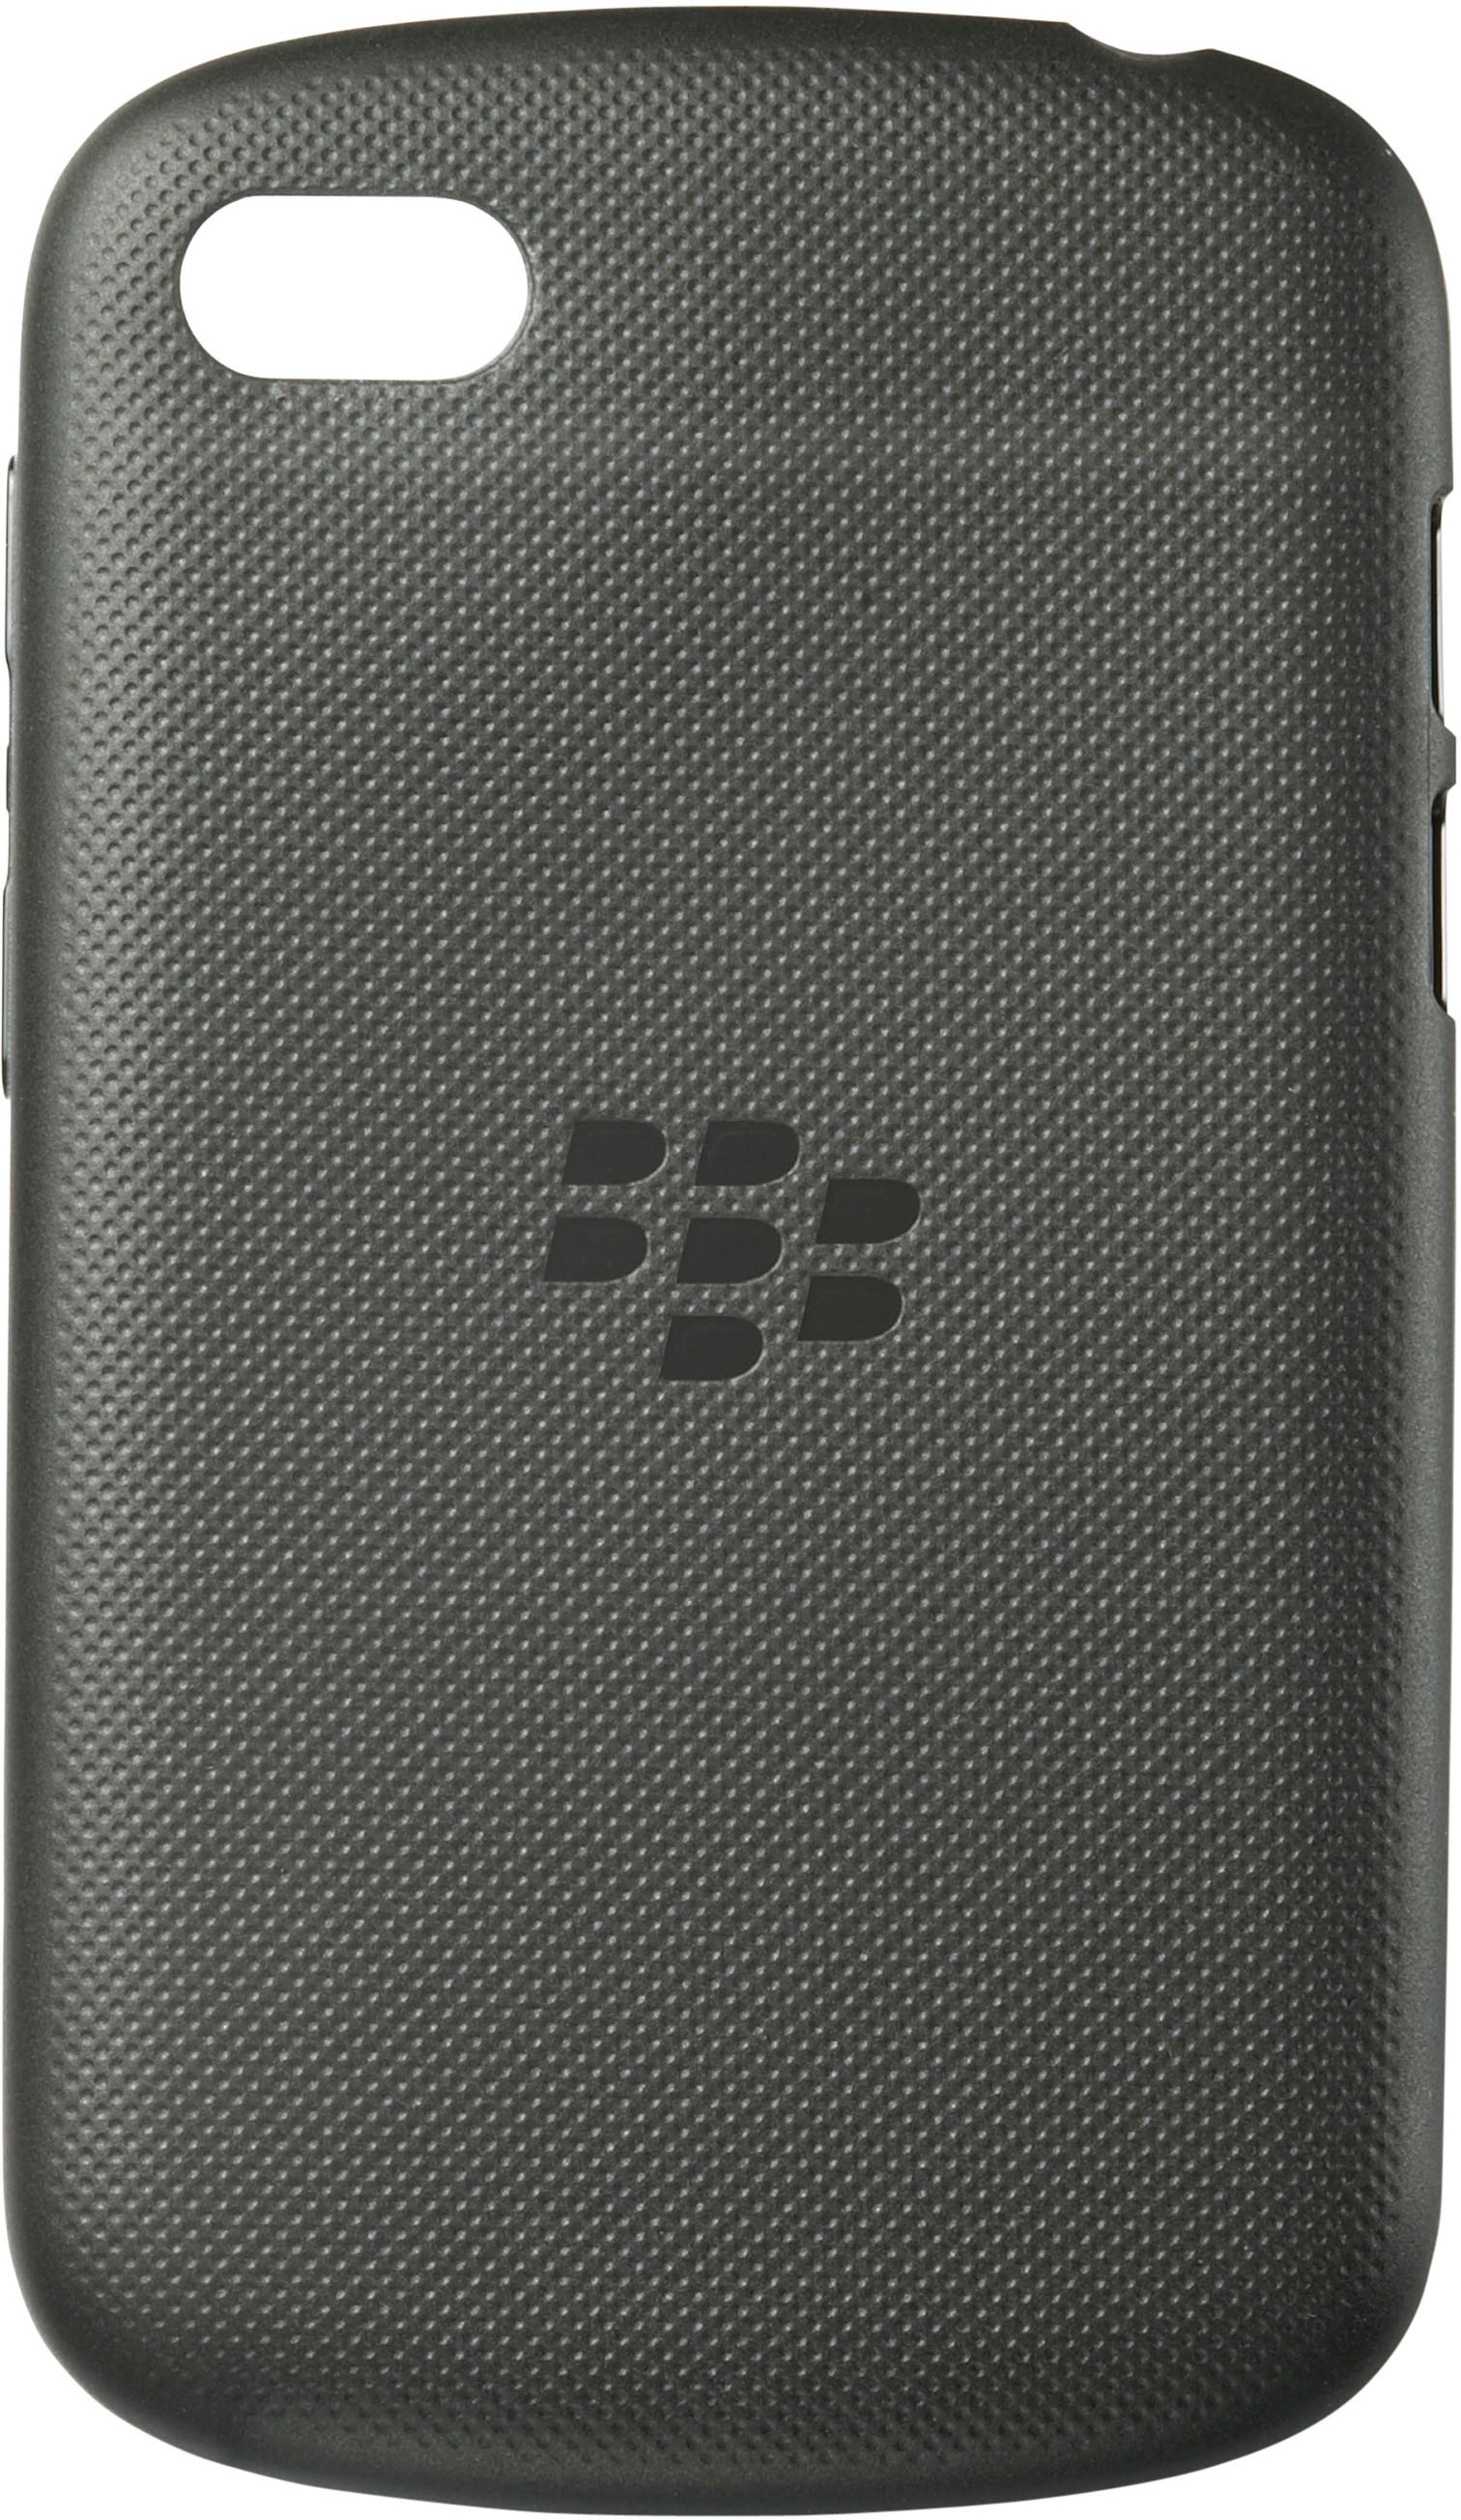 BLACKBERRY Soft Cover für schwarz, Blackberry, Schwarz Q10, Q10